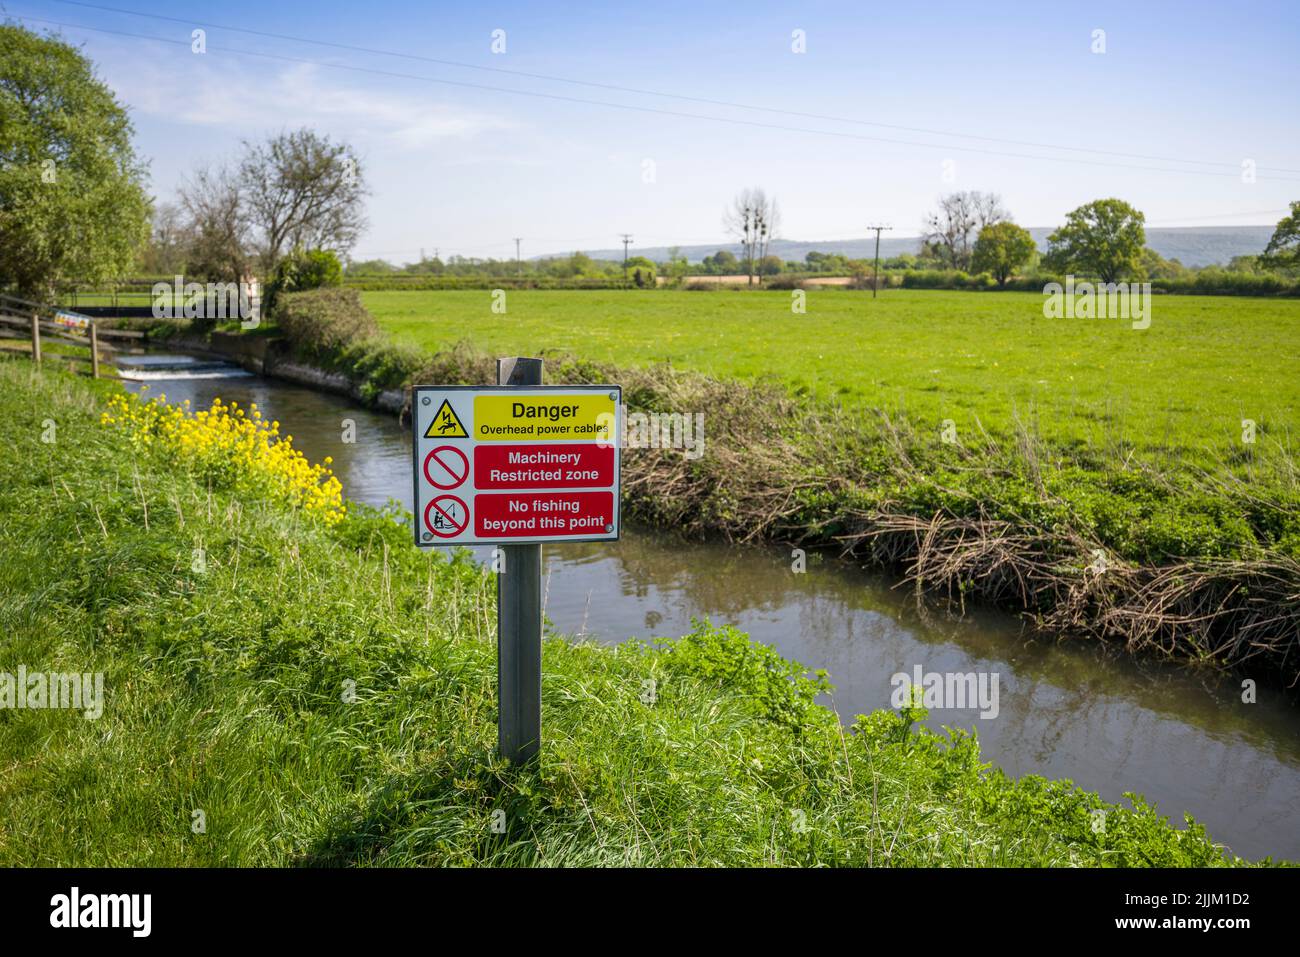 Una señal de advertencia de los peligros de los cables eléctricos aéreos en la orilla del río Yeo, también conocido como el Congresbury Yeo, en Iwood cerca del Congresbury, North Somerset, Inglaterra. Foto de stock